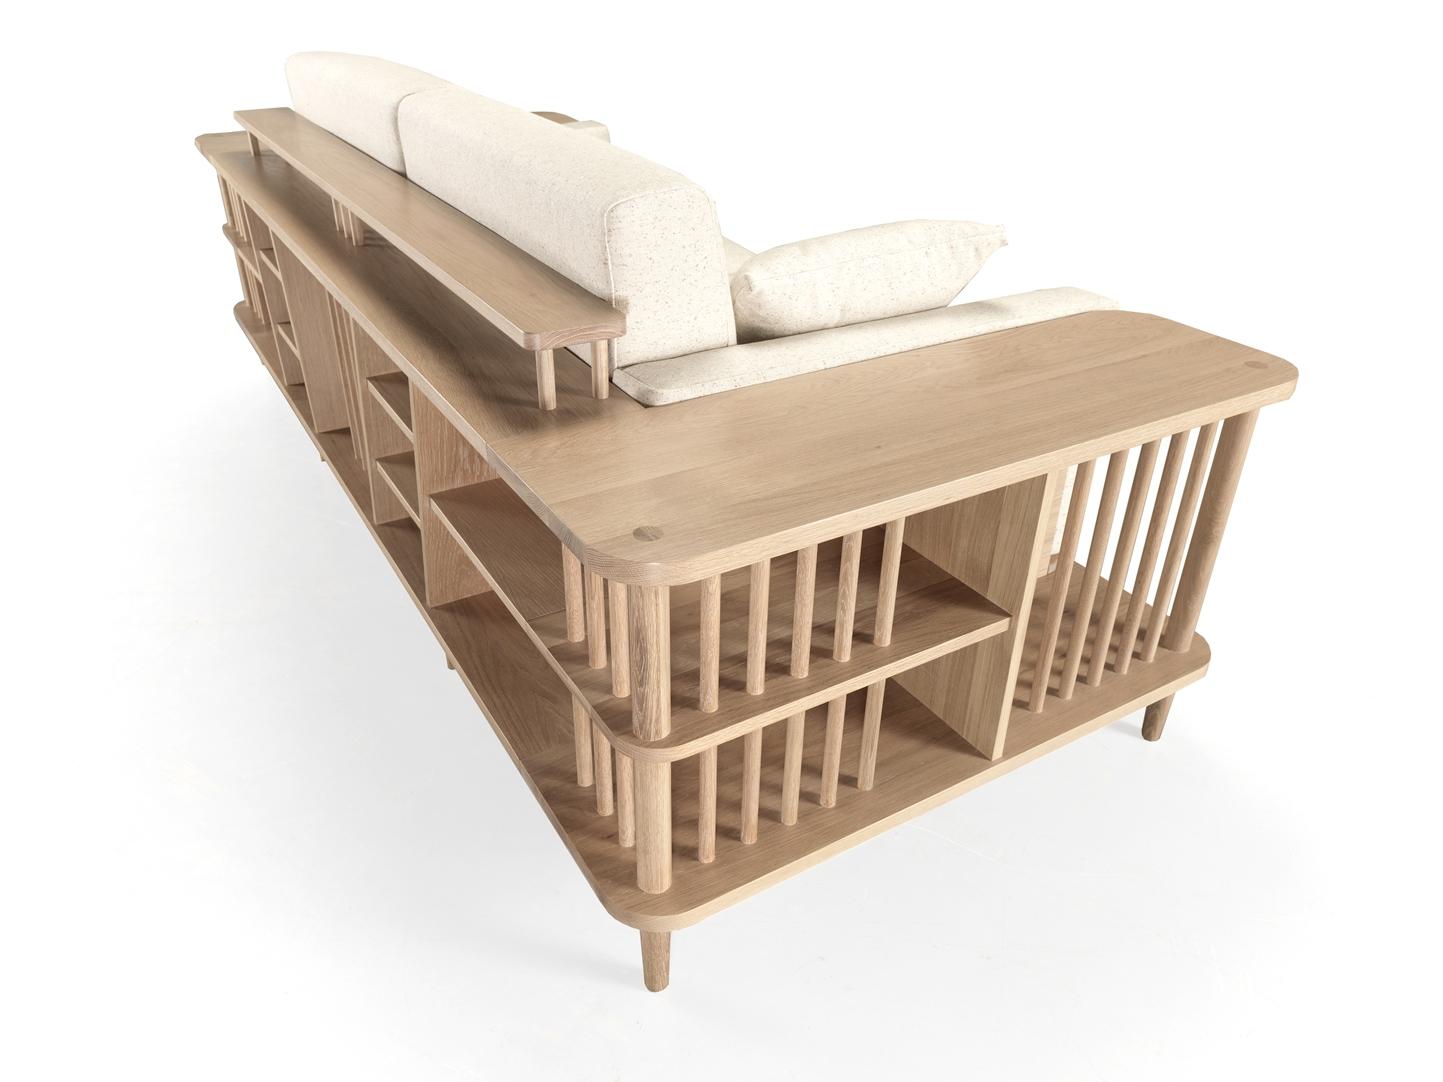 Ein atemberaubend schönes, bequemes Sofa mit umlaufendem Holzrahmen aus Massivholz. Ein Sofa, ein Bücherregal und auch ein Raumteiler, perfekt für einen exklusiven Raum.
Die Kissen lassen sich leicht abnehmen.
Verpackt in einer